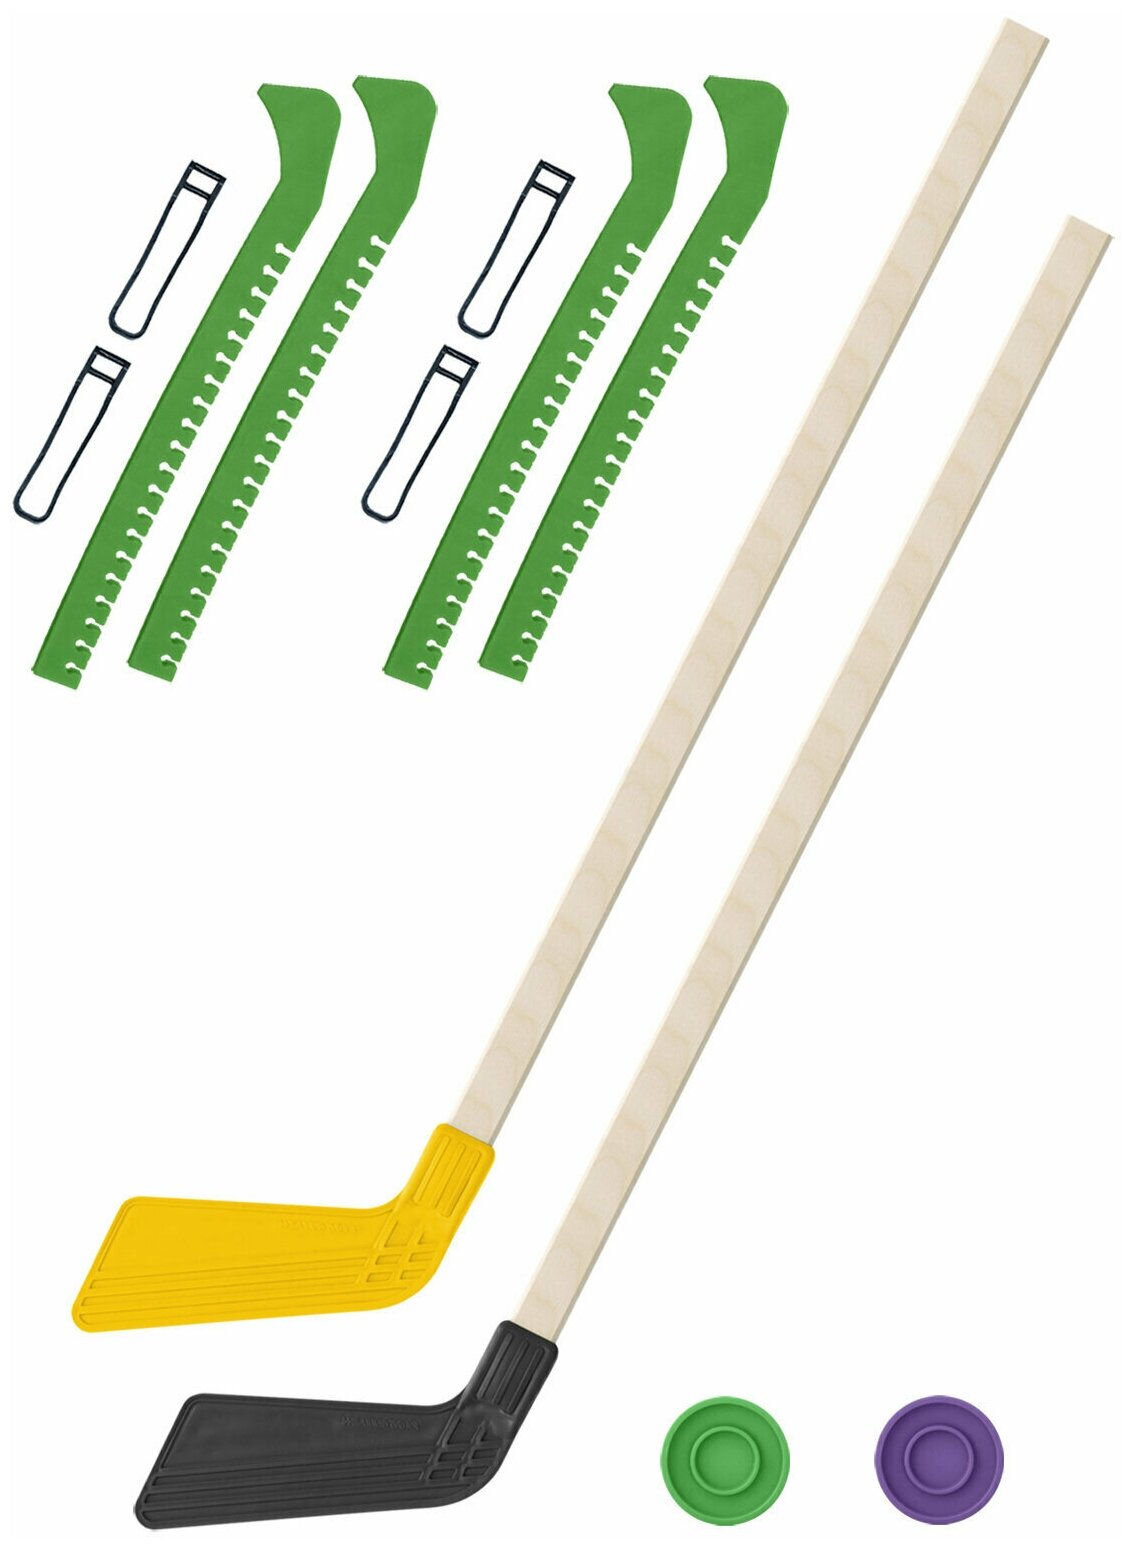 Детский хоккейный набор для игр на улице Клюшка хоккейная детская 2 шт жёлтая и чёрная 80 см.+2 шайбы + Чехлы для коньков зеленые - 2 шт. Винтер